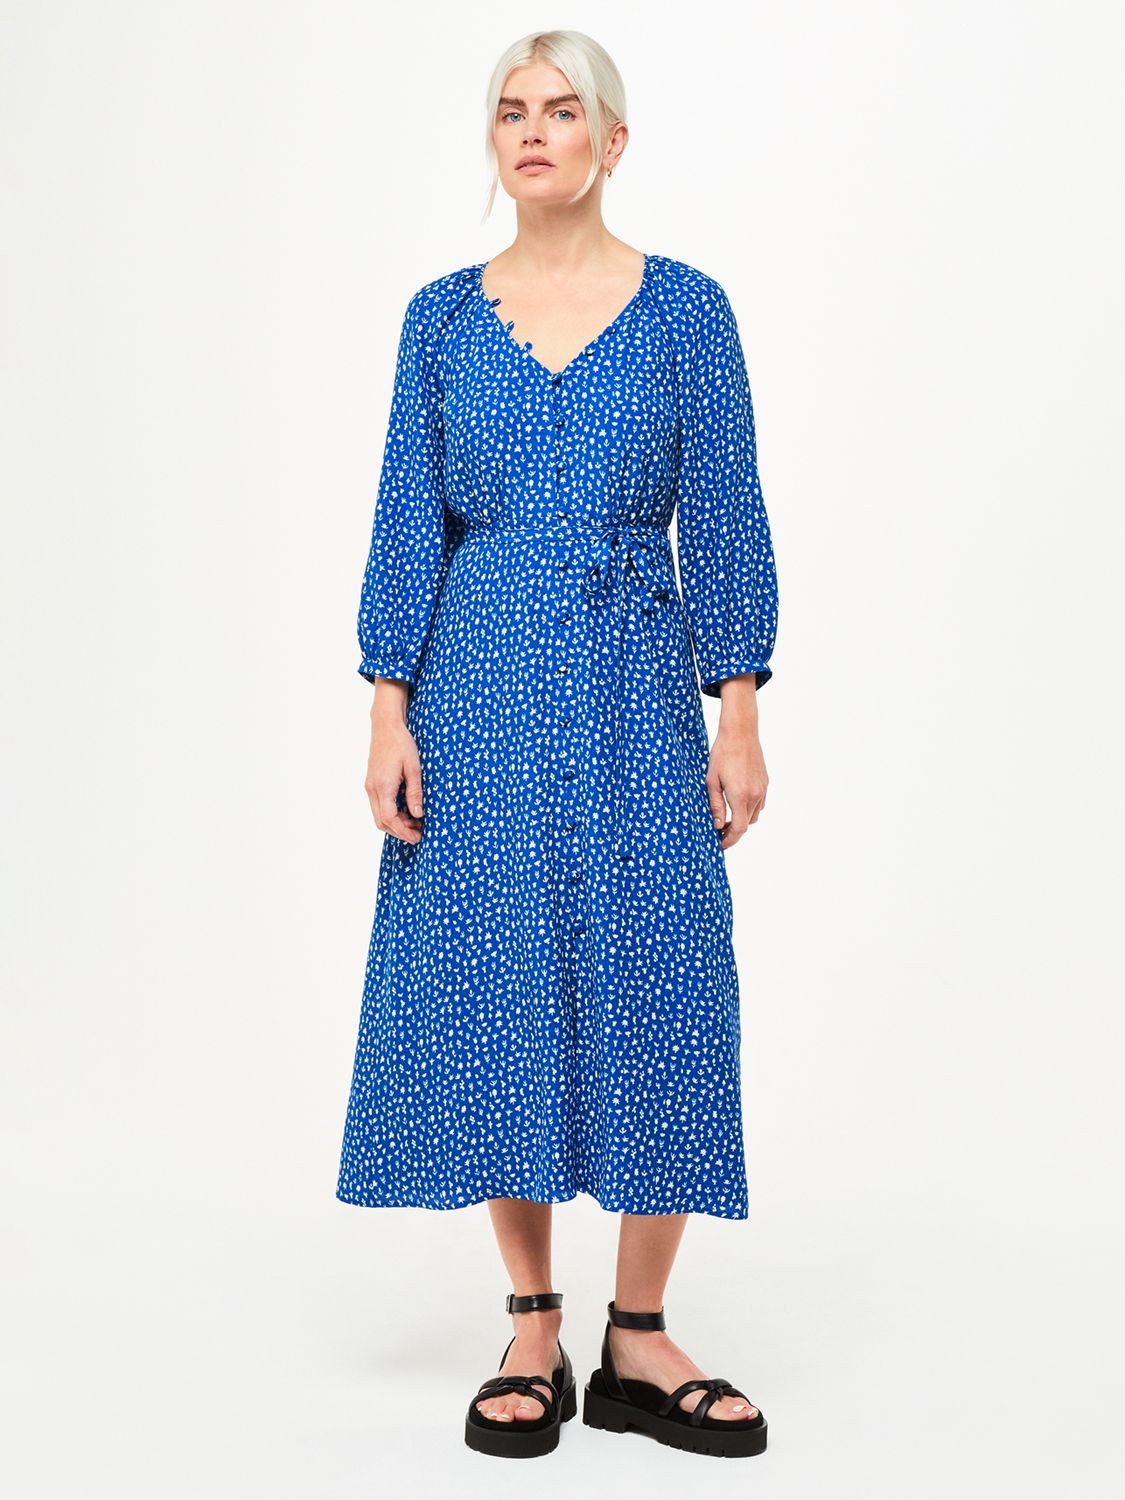 Blue/Multi Cactus Print Velvet Dress, WHISTLES